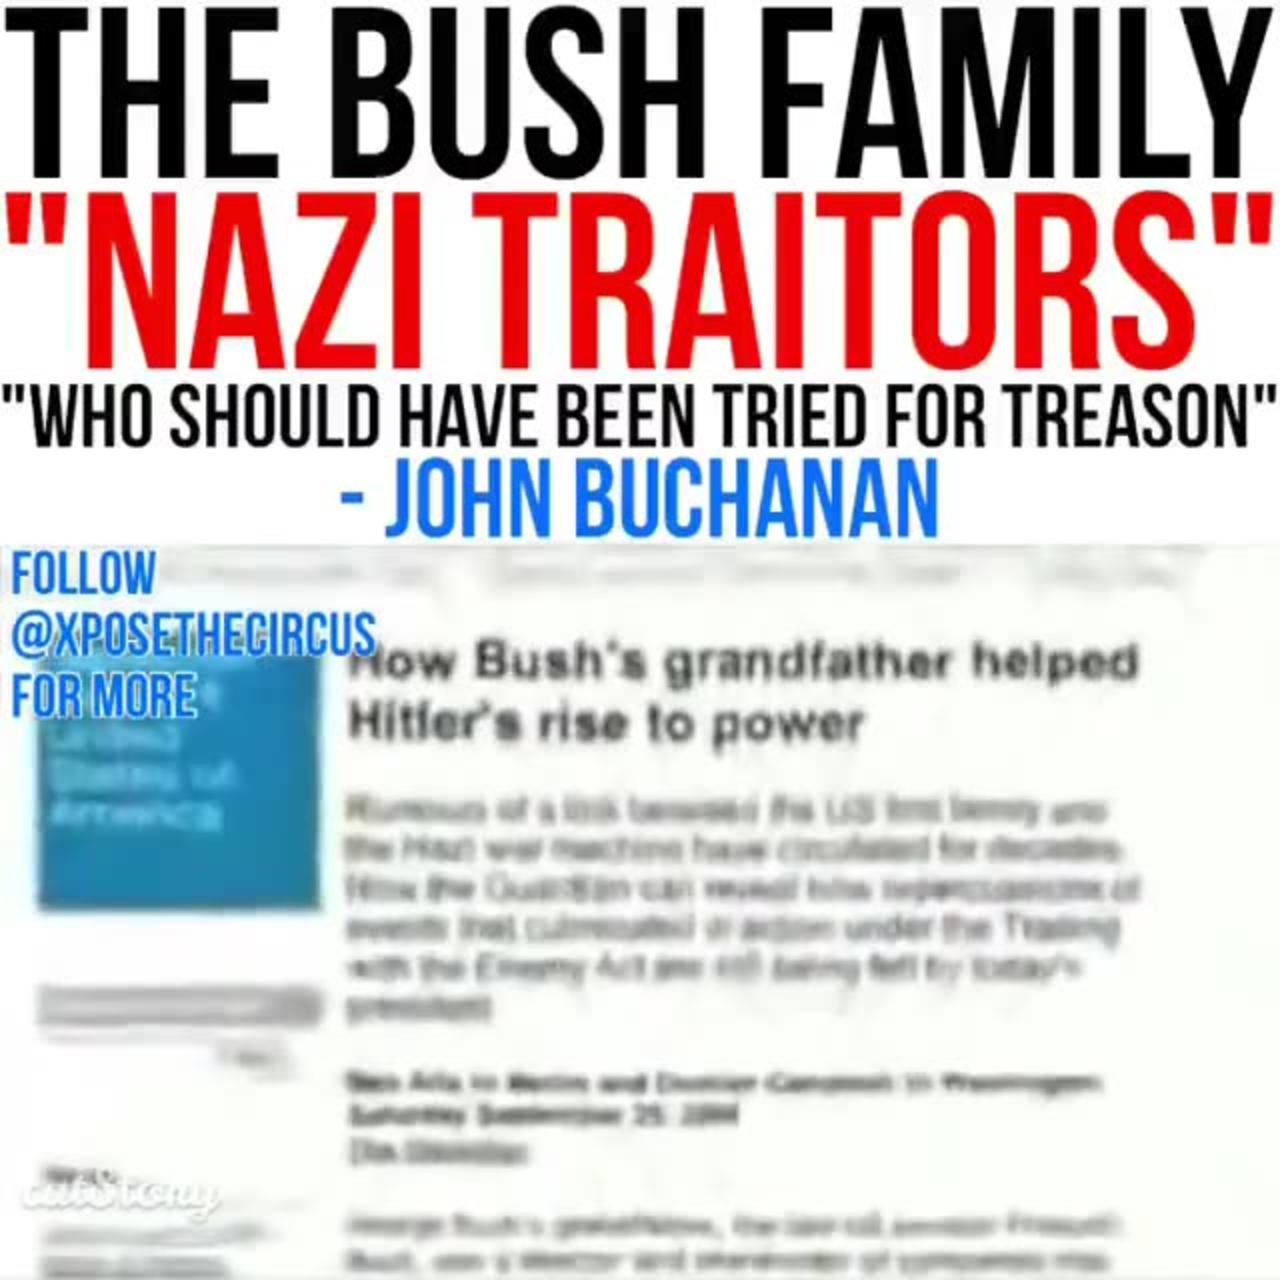 Nazi Bush Family